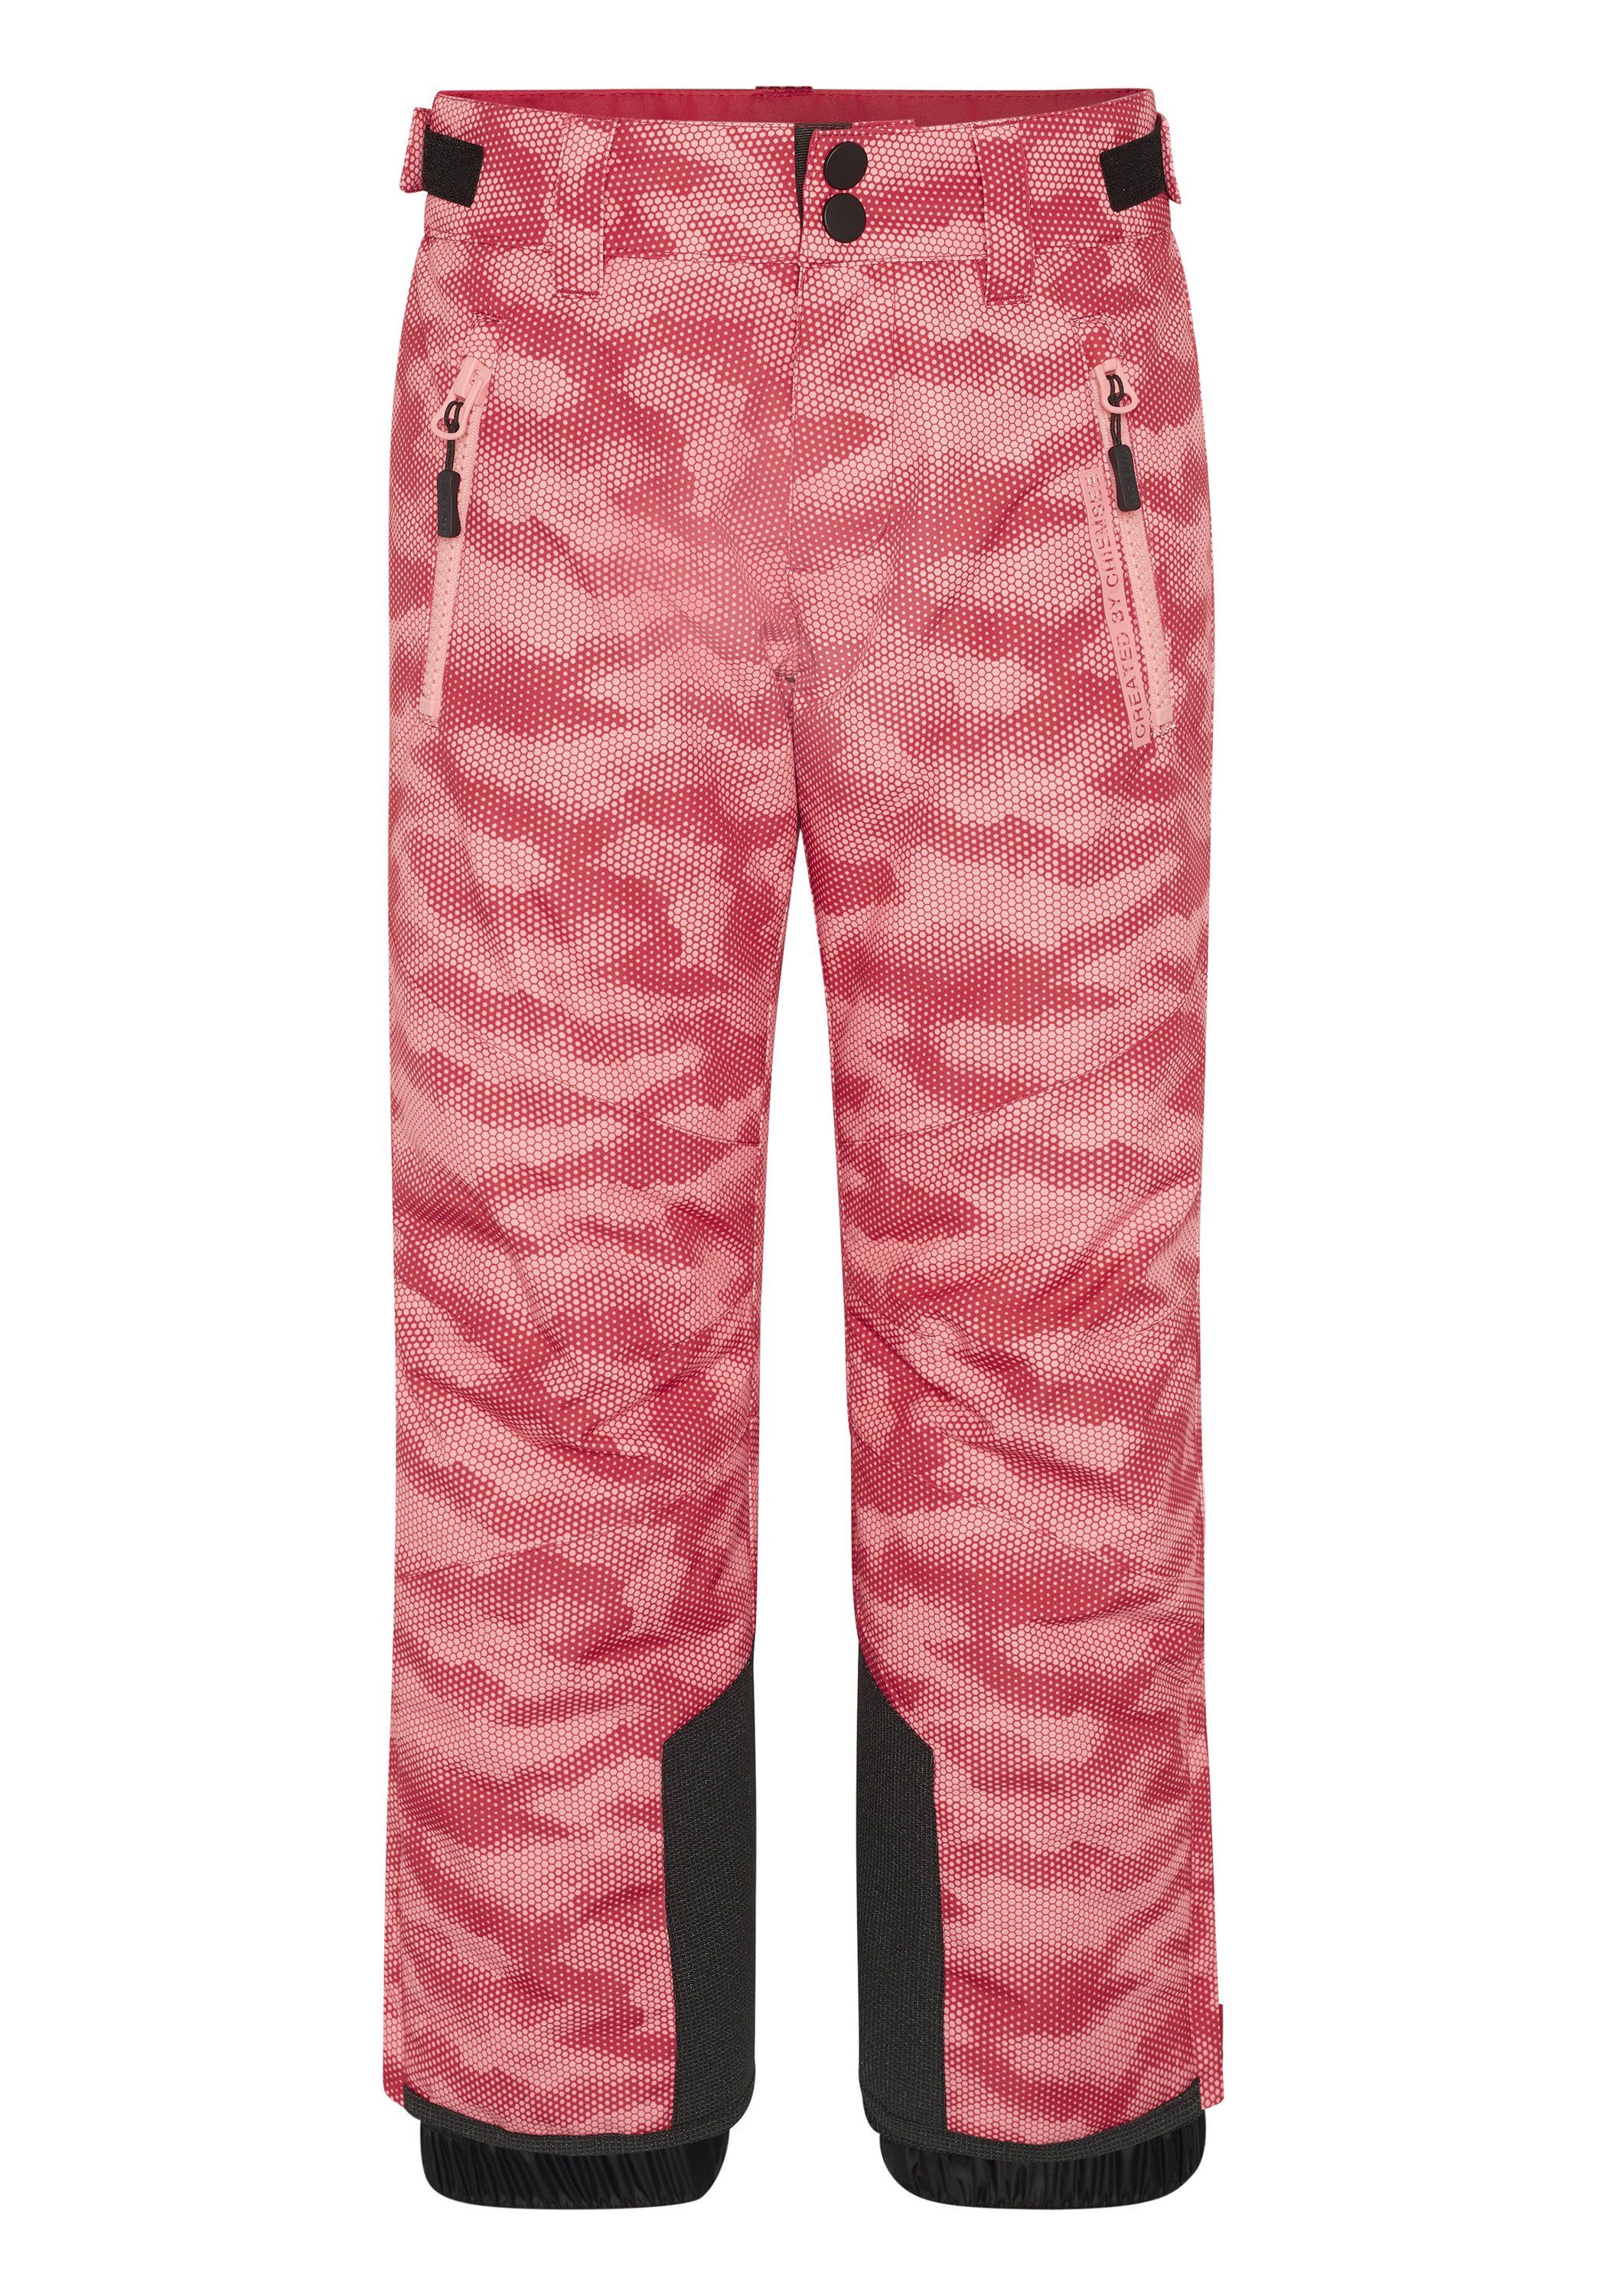 Sporthose Skihose mit Chiemsee Reißverschlusstaschen 1 hell seitlichen rosa/rosa